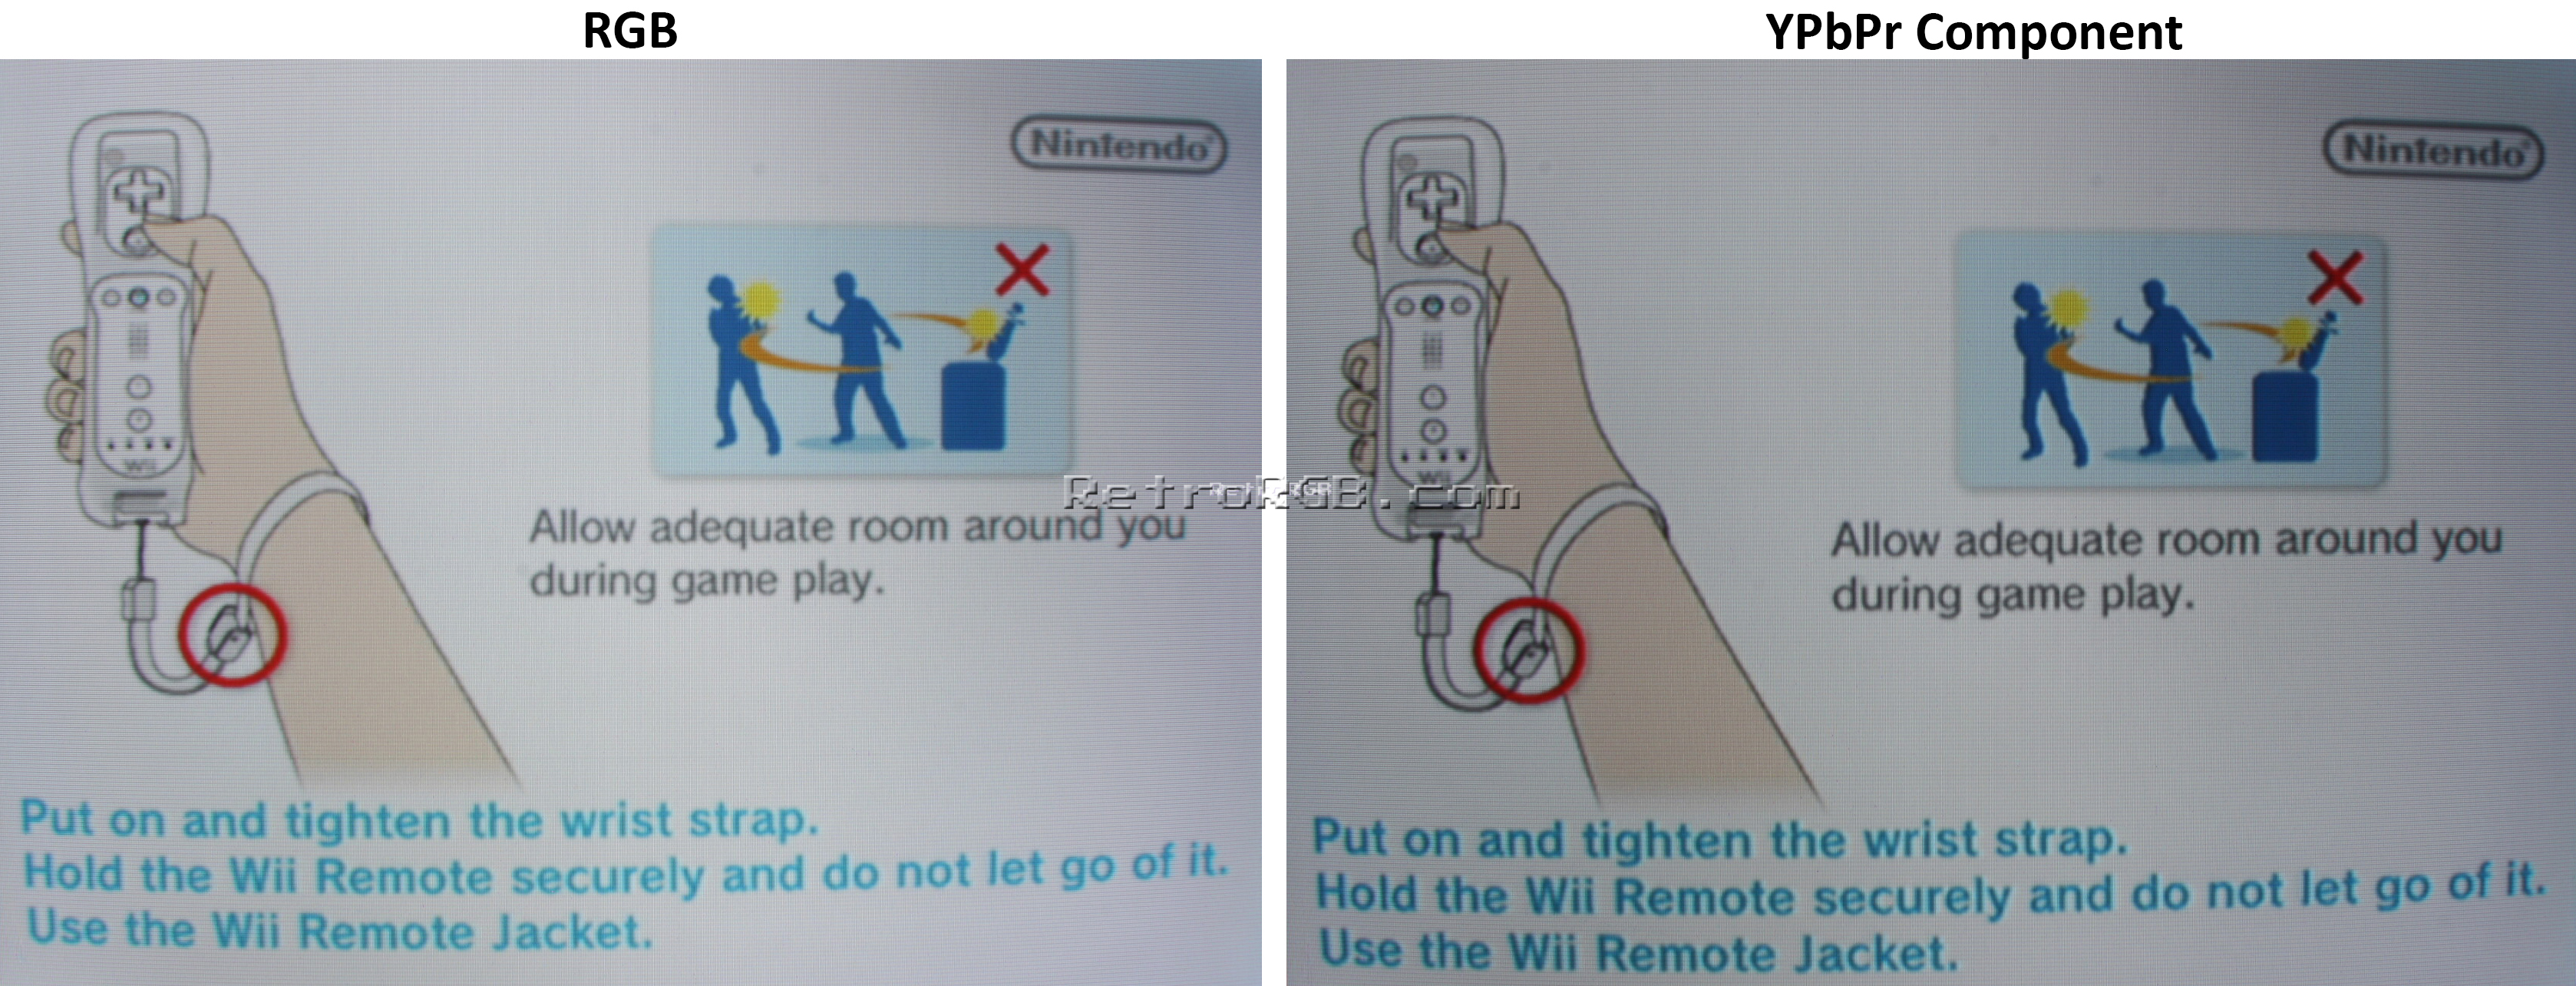 Cartas credenciales Escuela primaria Miguel Ángel Wii RGB vs Wii Component | RetroRGB